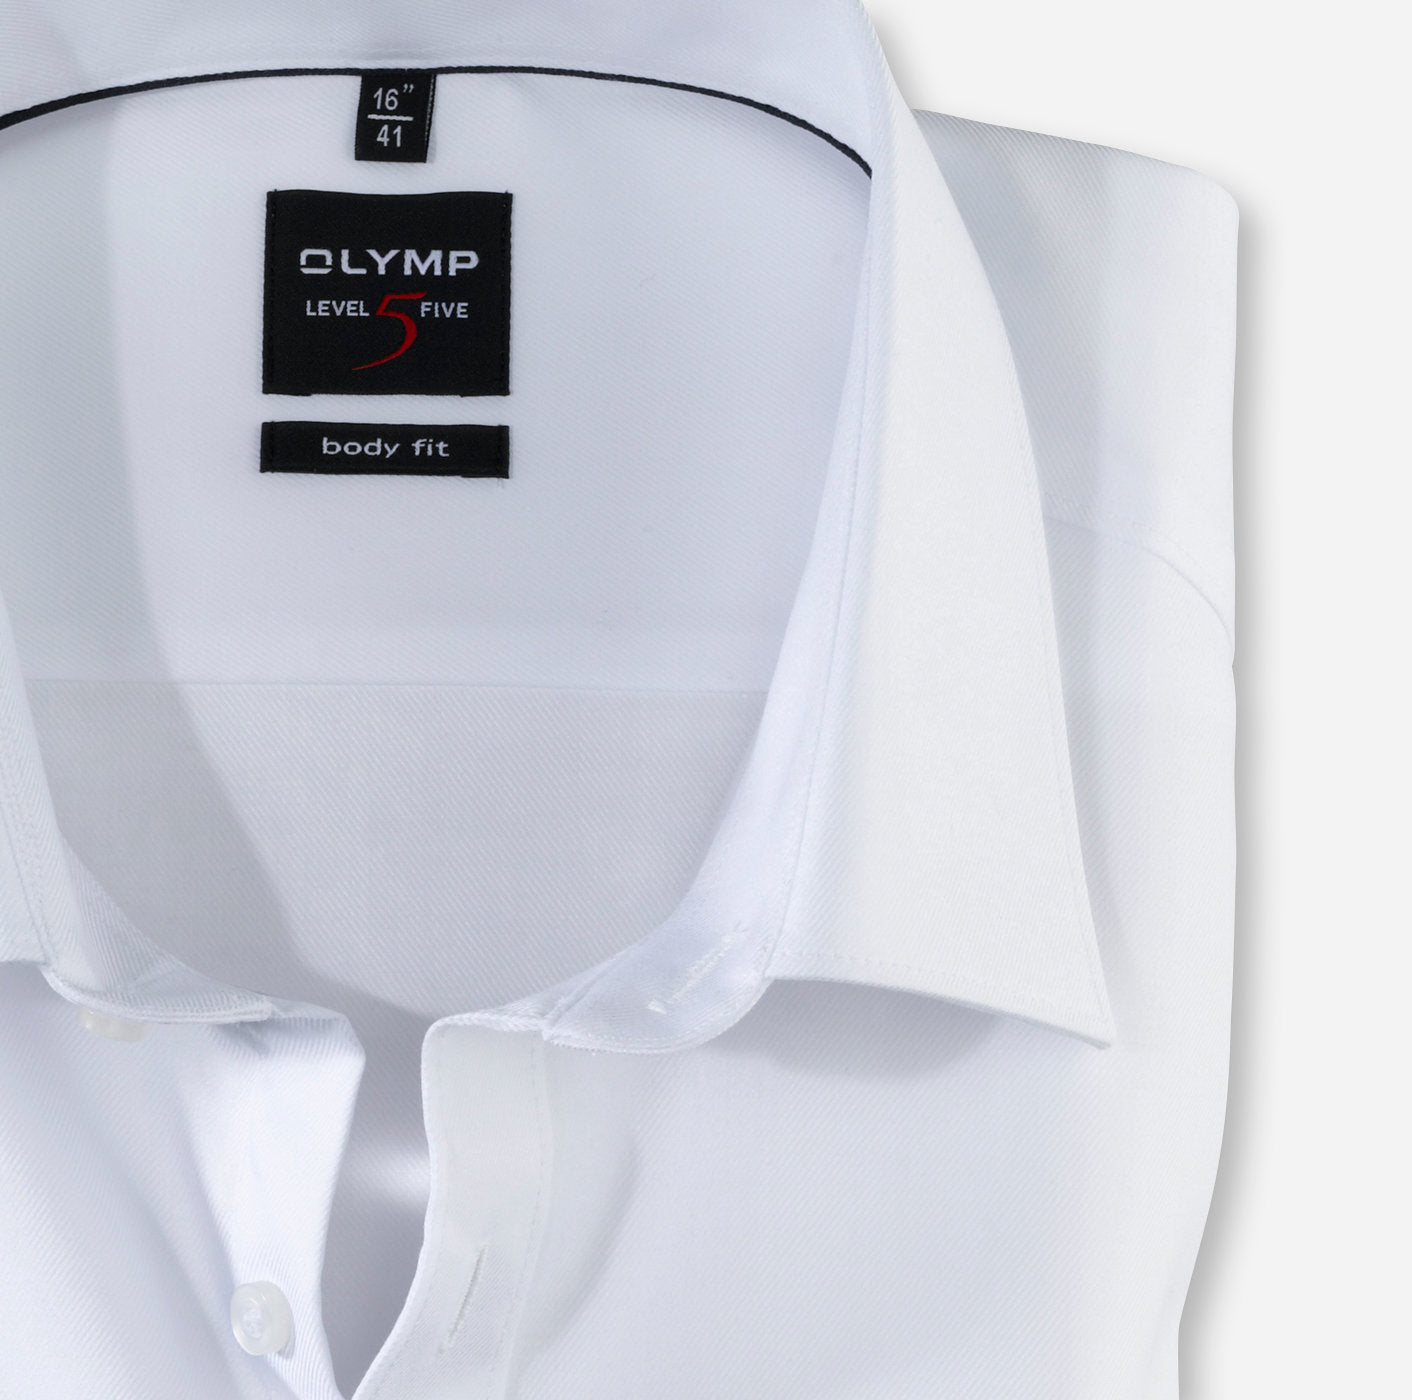 Formal - 5 Olymp Men Galvin White Shirt for Level Body Fit -